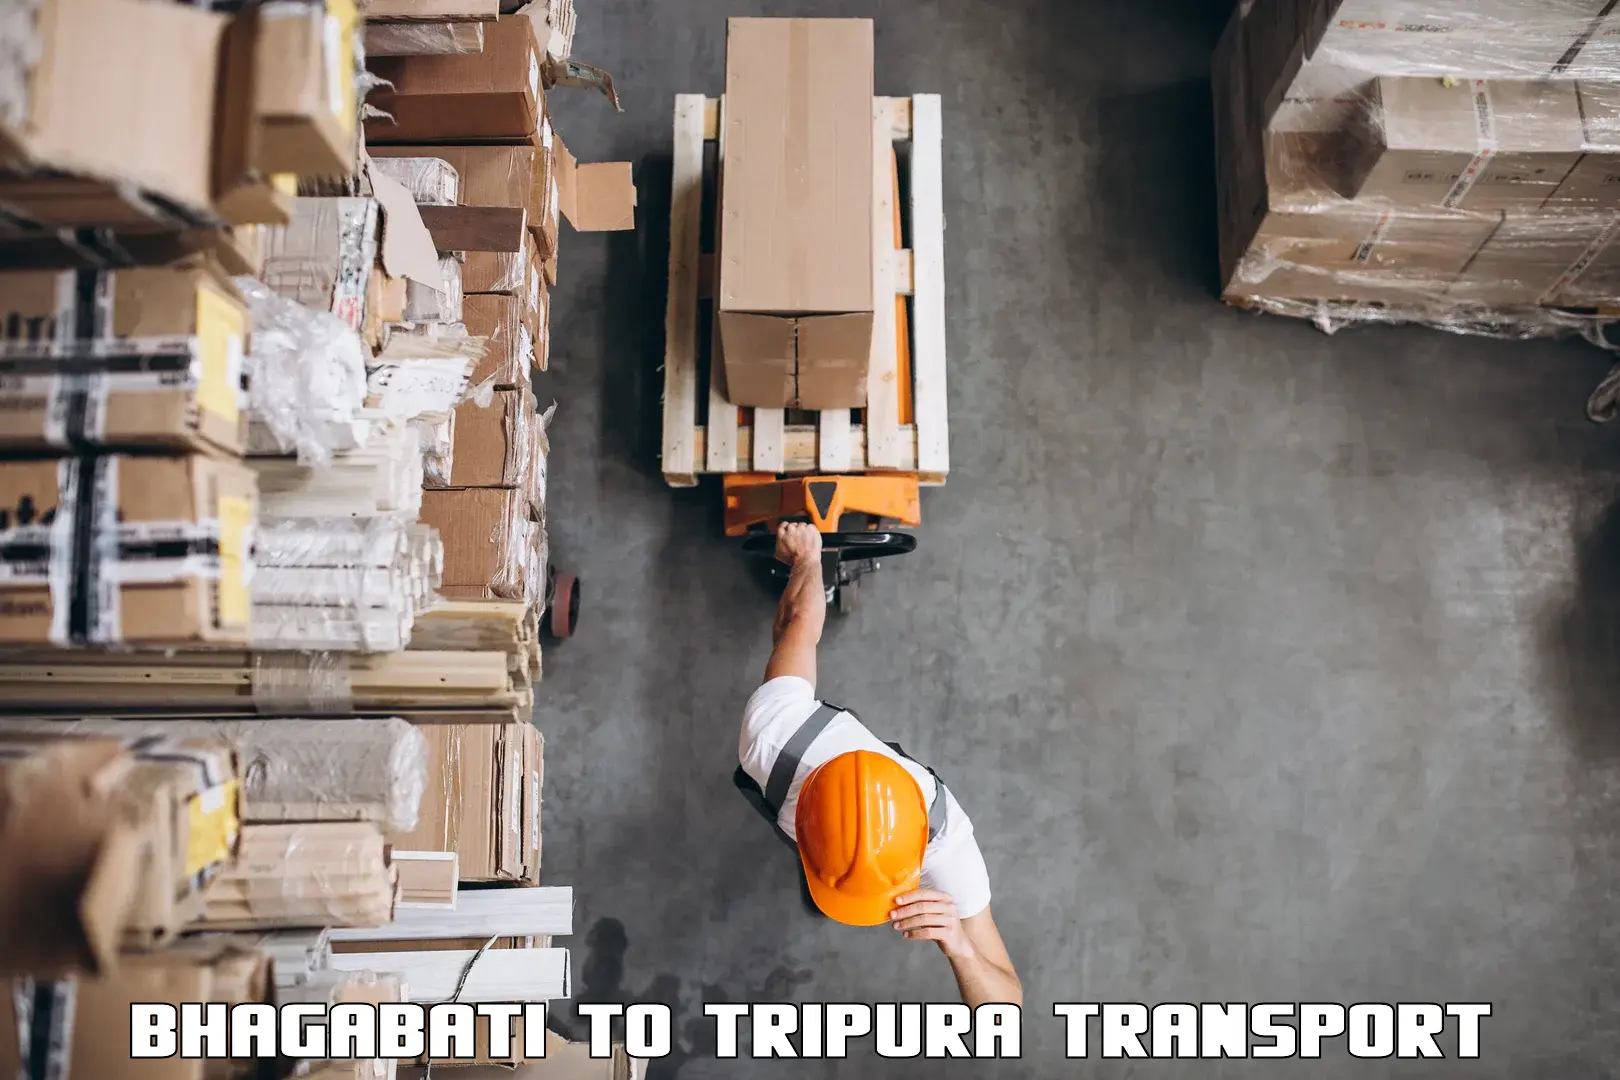 Truck transport companies in India Bhagabati to Udaipur Tripura